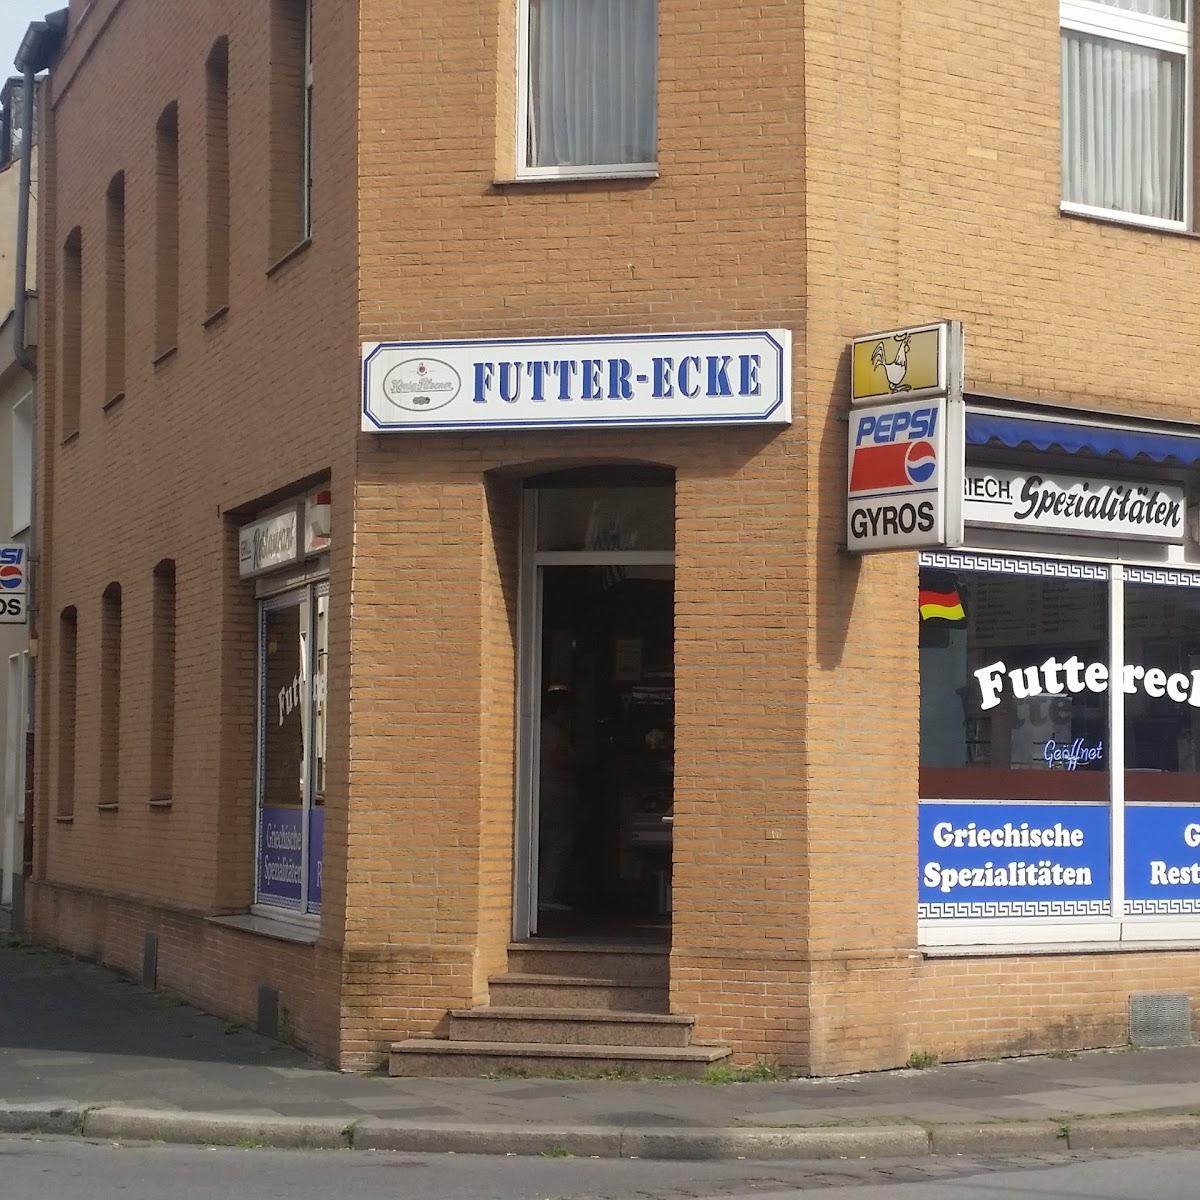 Restaurant "Futterecke" in Duisburg